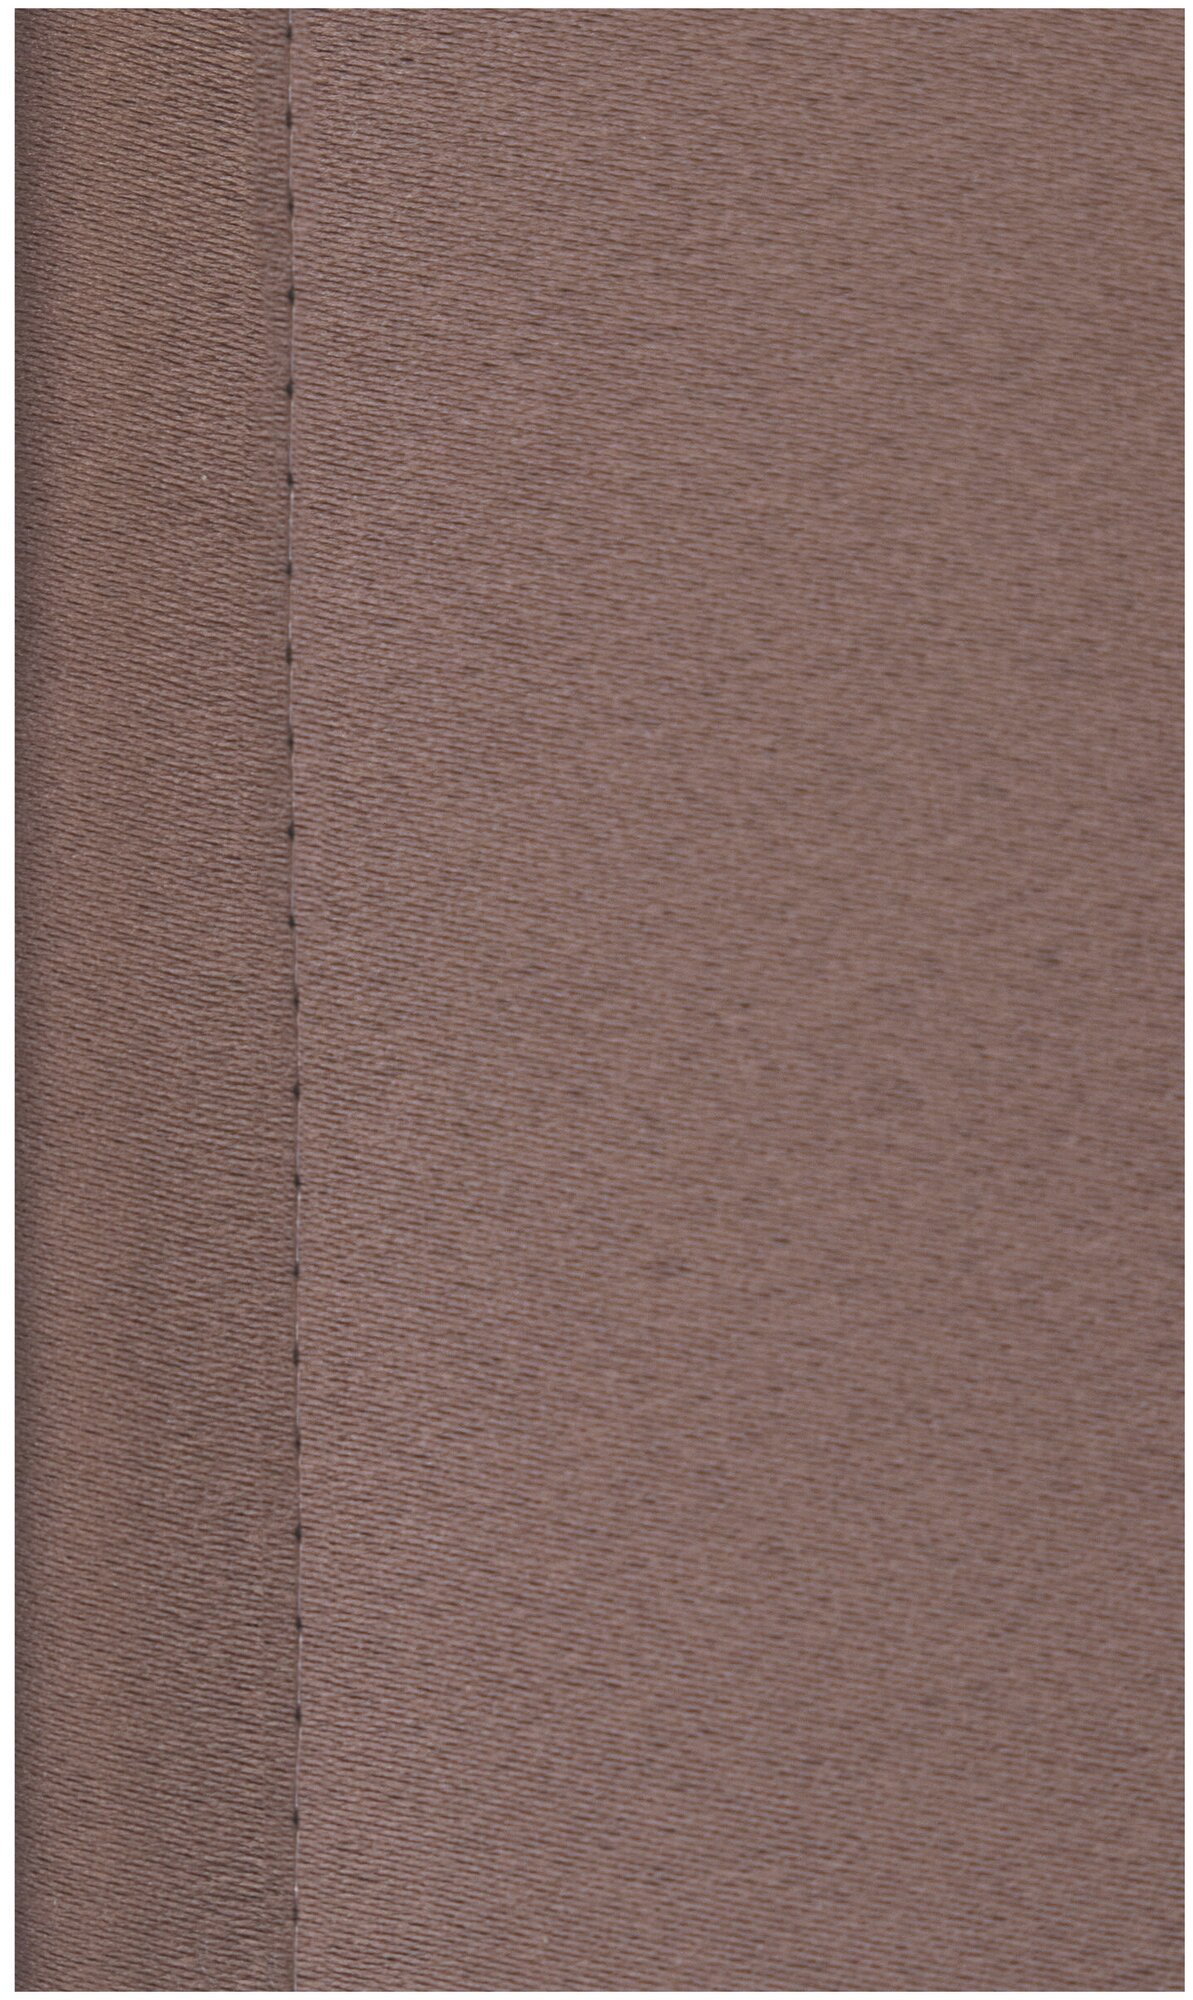 Комплект штор I-linen блэкаут, однотонные коричневые 150х270см, 2 шт.